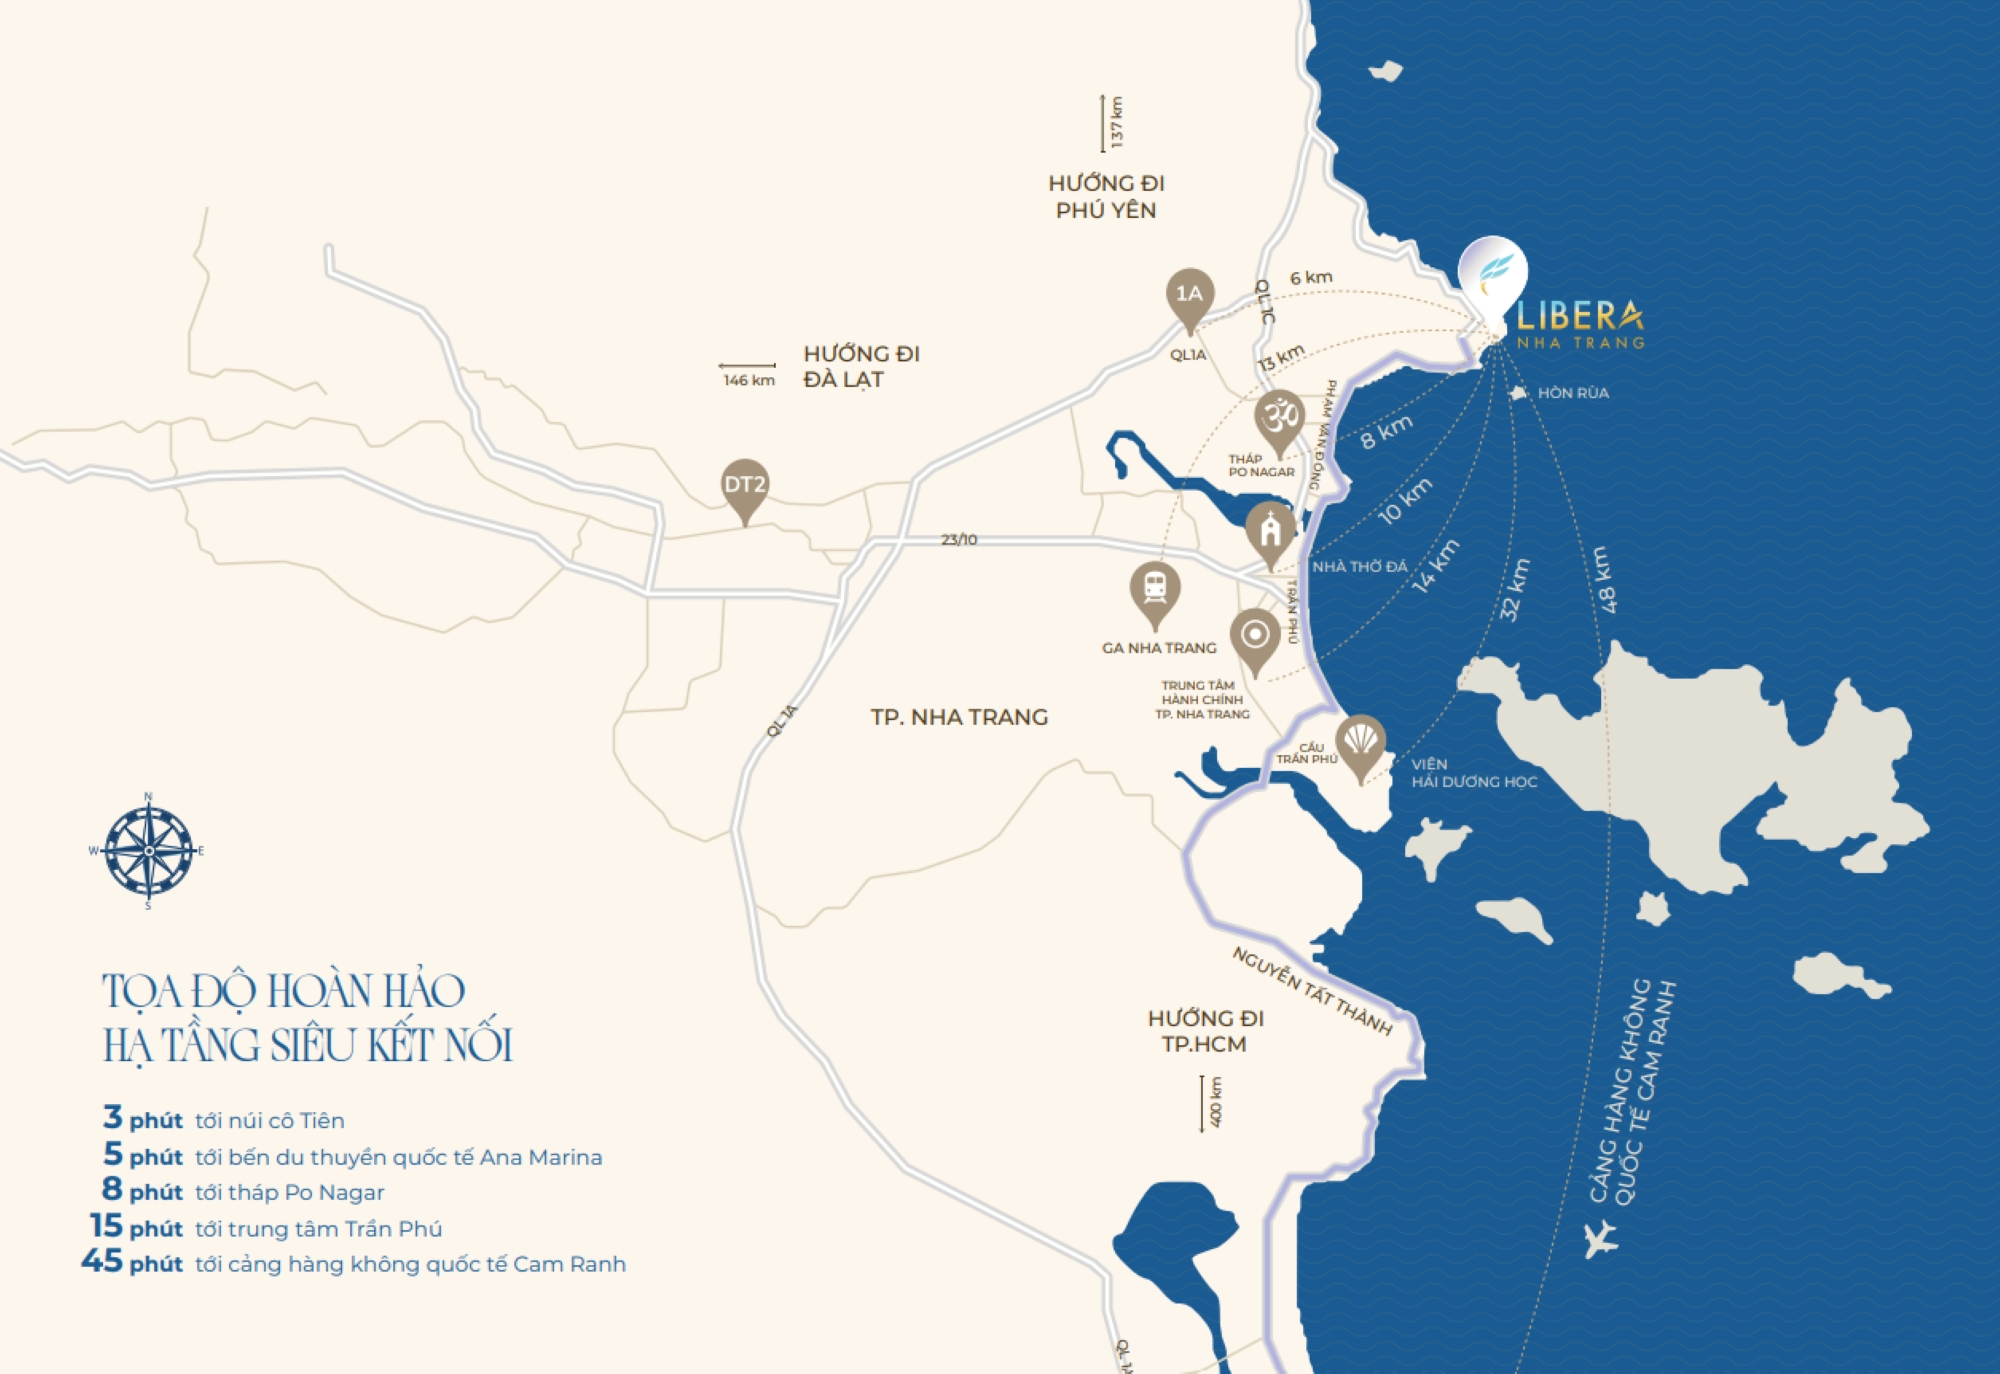 Dự án Libera Nha Trang có kết nối giao thông thuận tiện